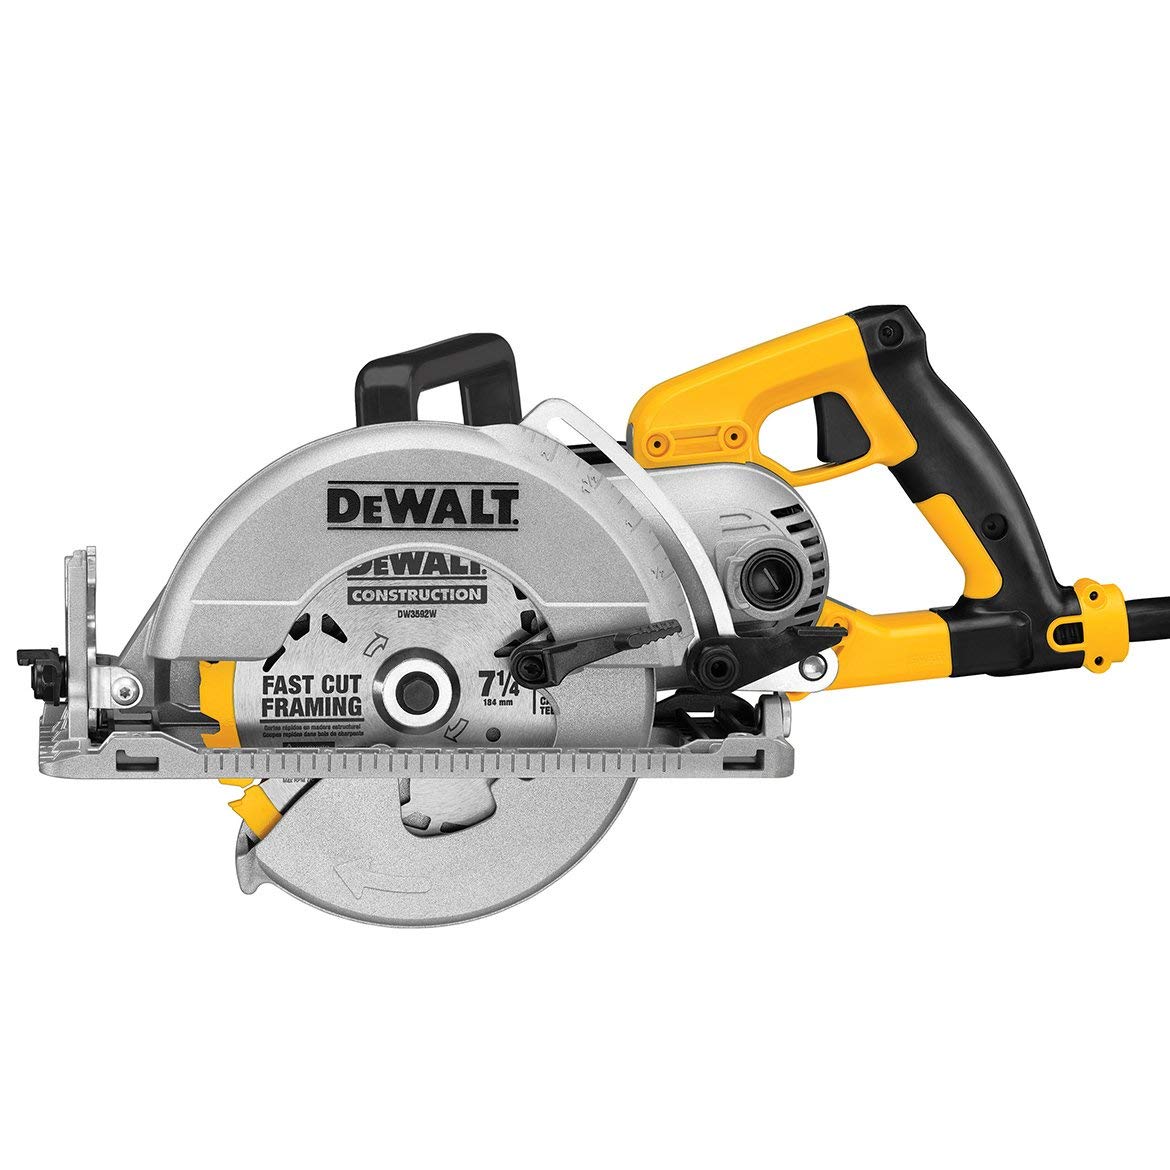 DeWalt DWS535B Worm drive Circular saw with Electric Brake, 7-1/4"